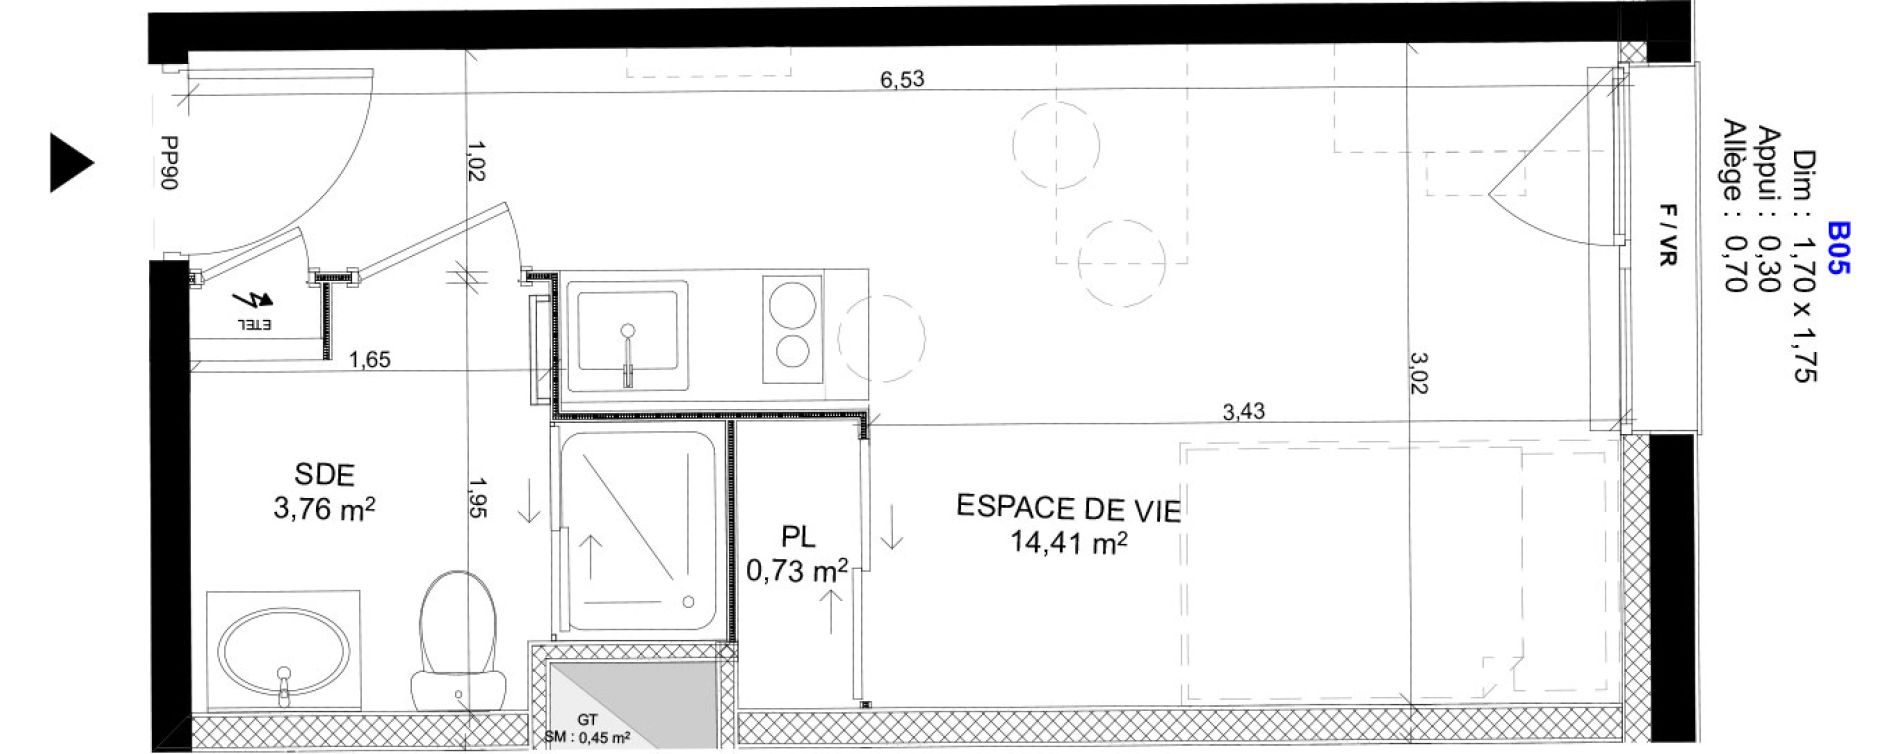 Appartement T1 meubl&eacute; de 18,90 m2 au Havre Sainte marie - saint leon